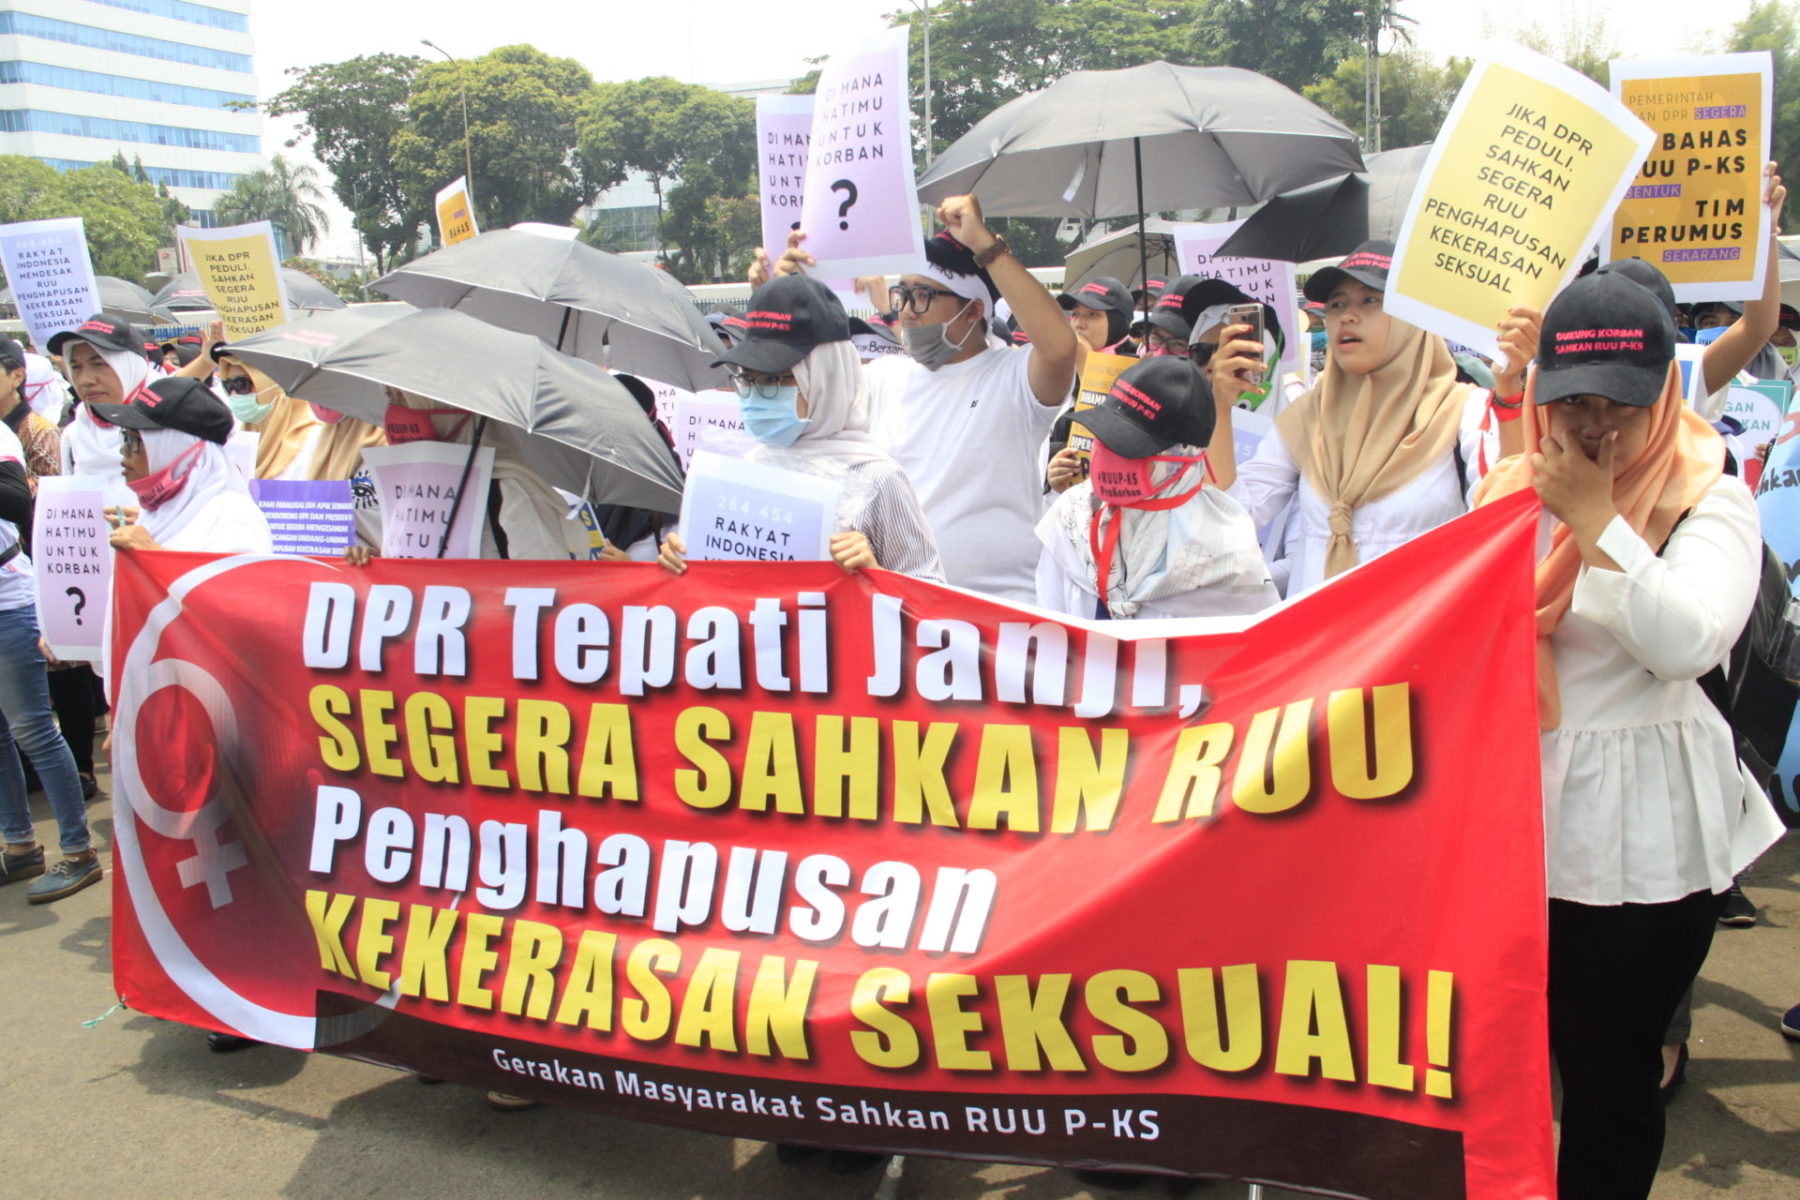 Indonesien Beendigung sexualisierter Gewalt